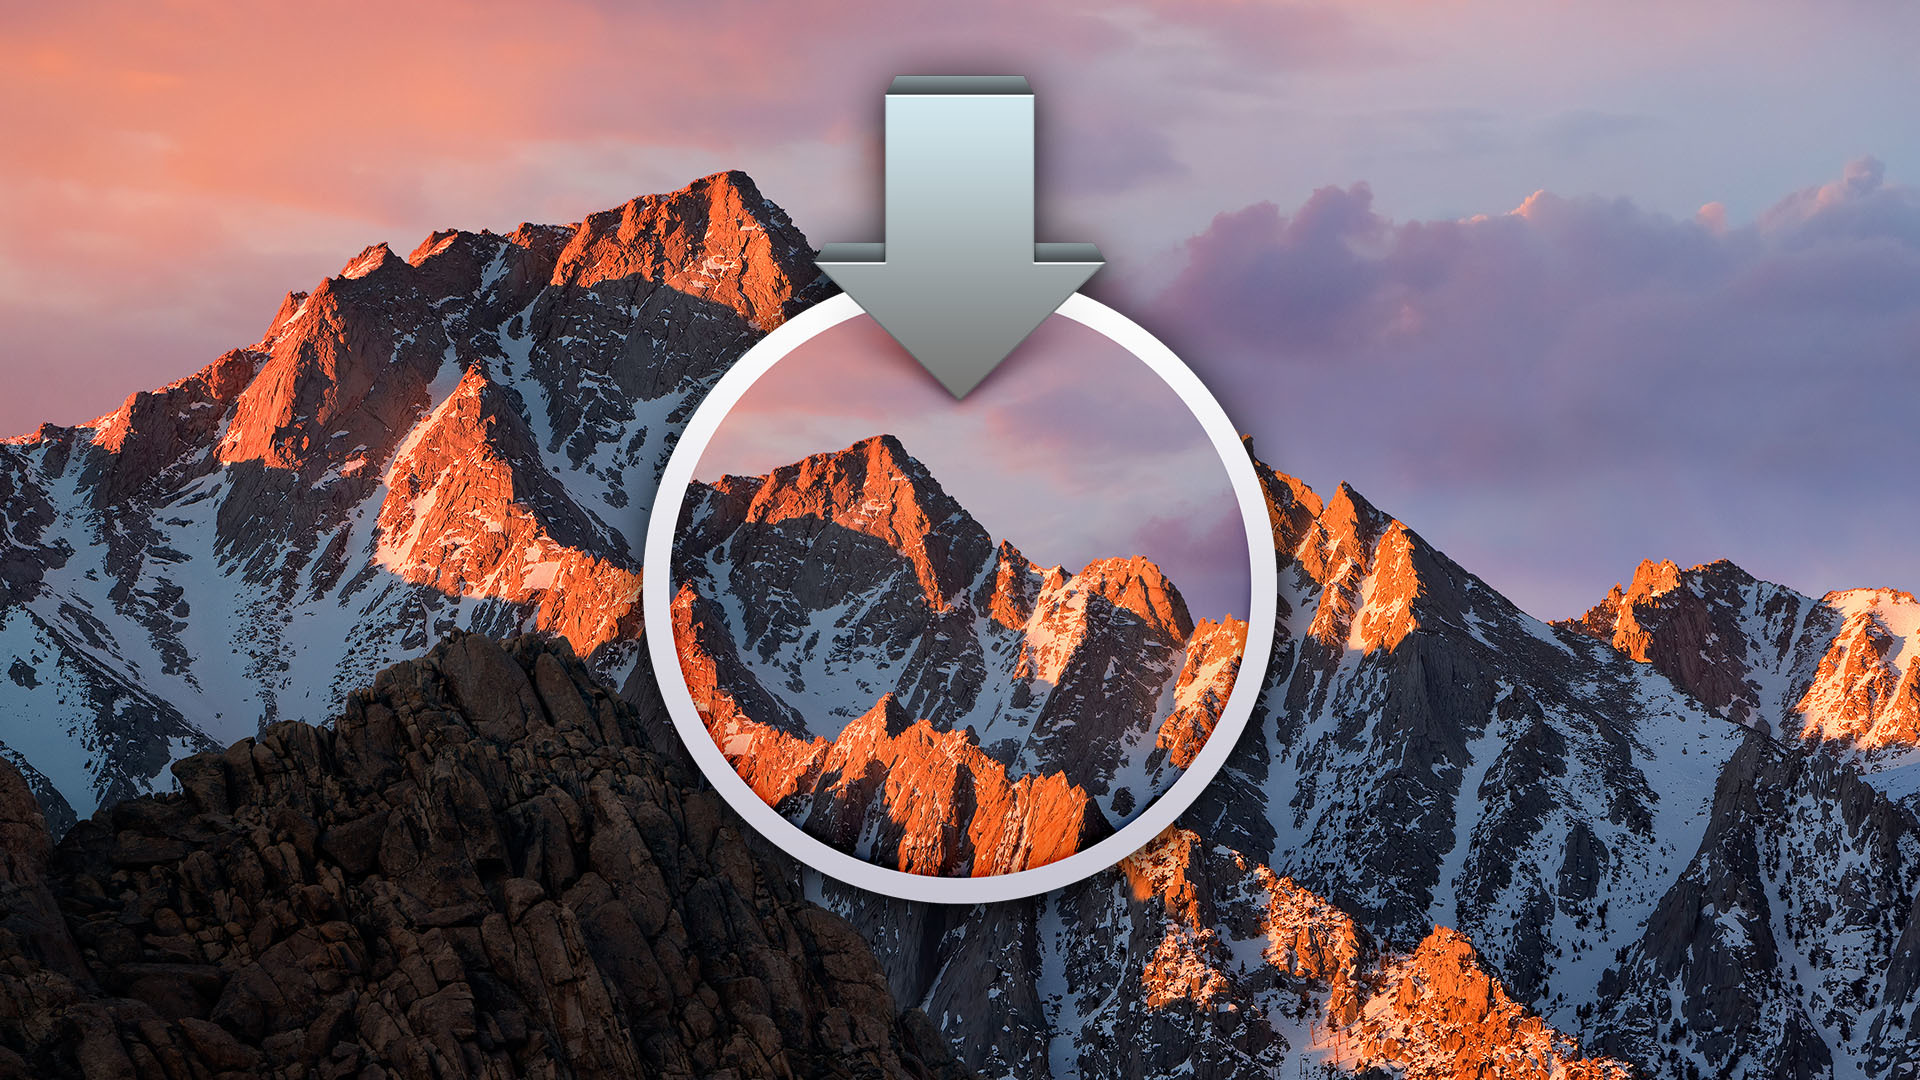 Apple phát hành macOS 10.12.1 public/developer beta 2 cho Mac